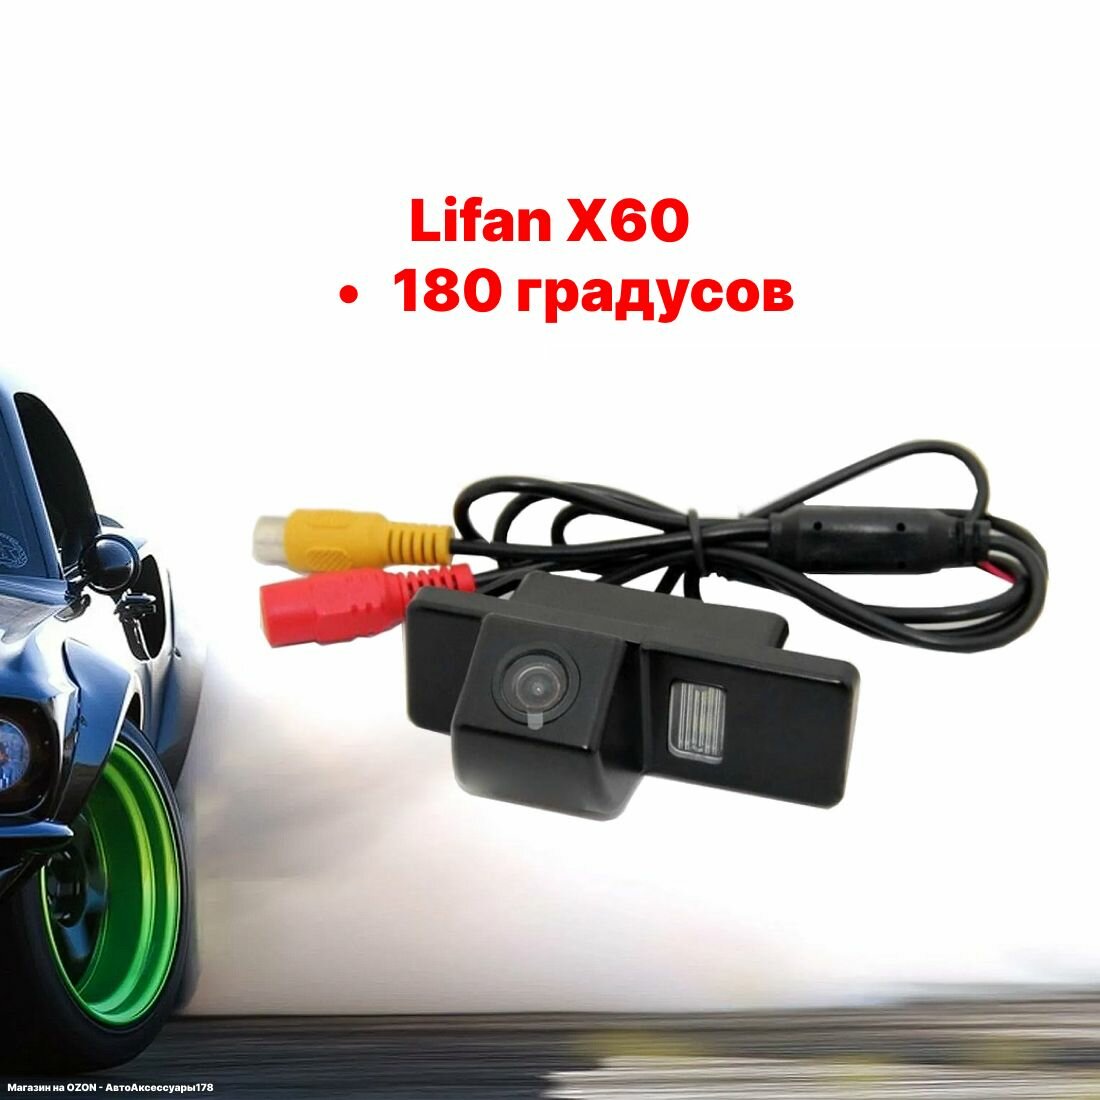 Камера заднего вида Лифан Х60 - 180 градусов (Lifan X60)